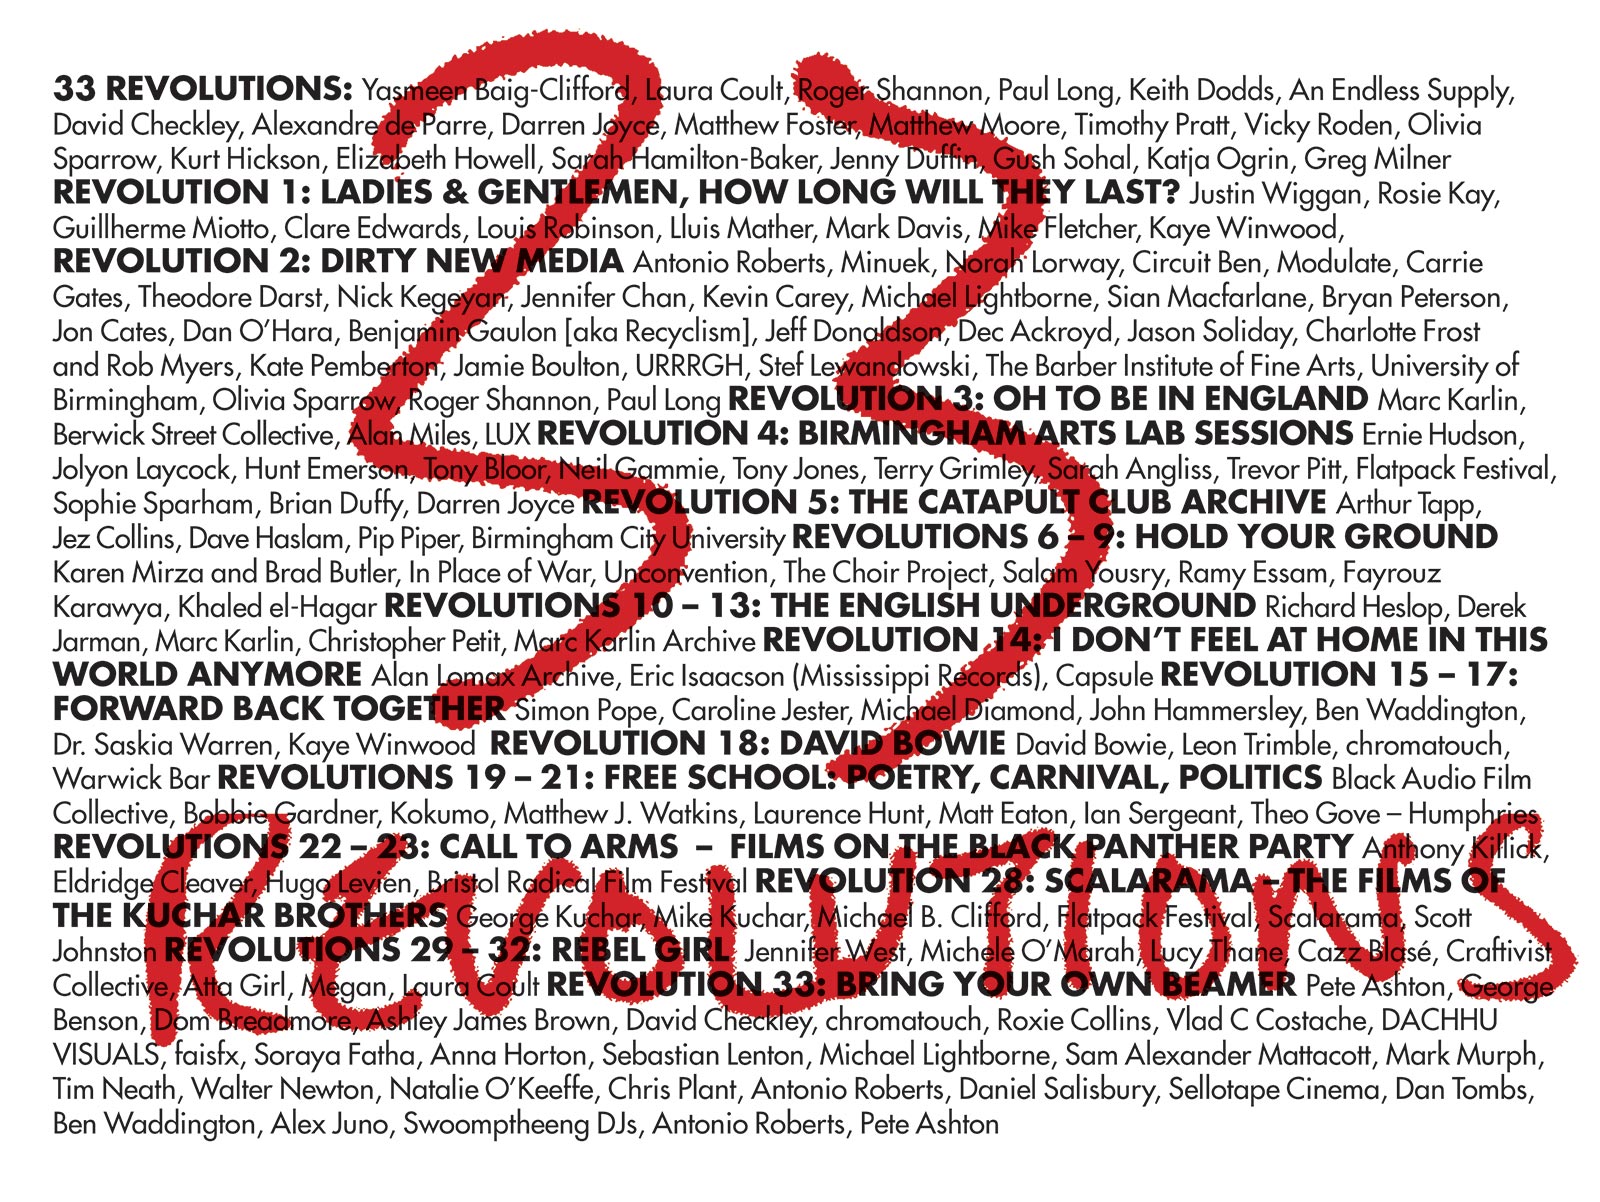 33 Revolutions